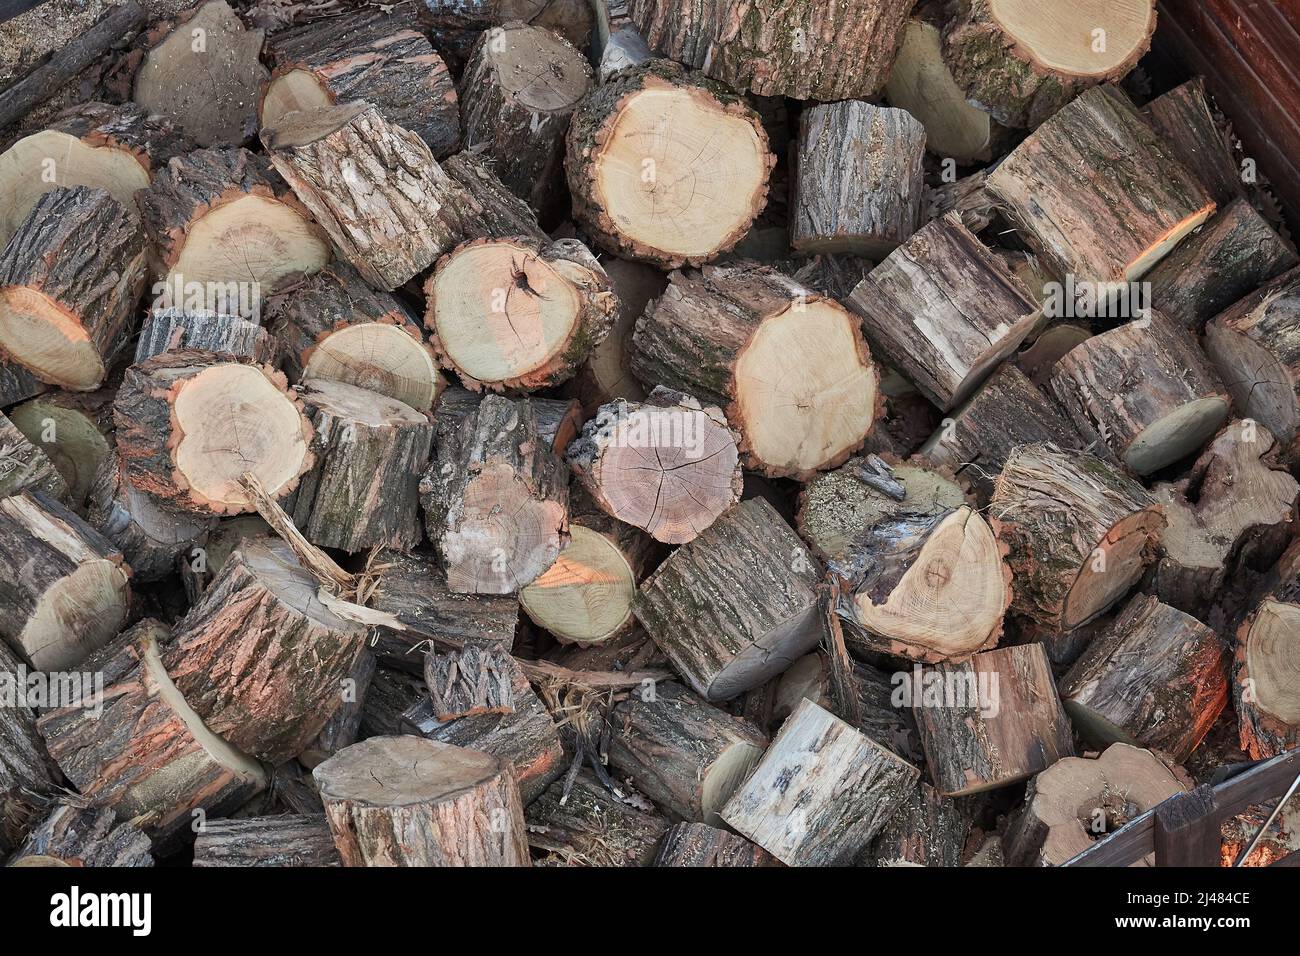 Wood Pile Closeup Stock Photo